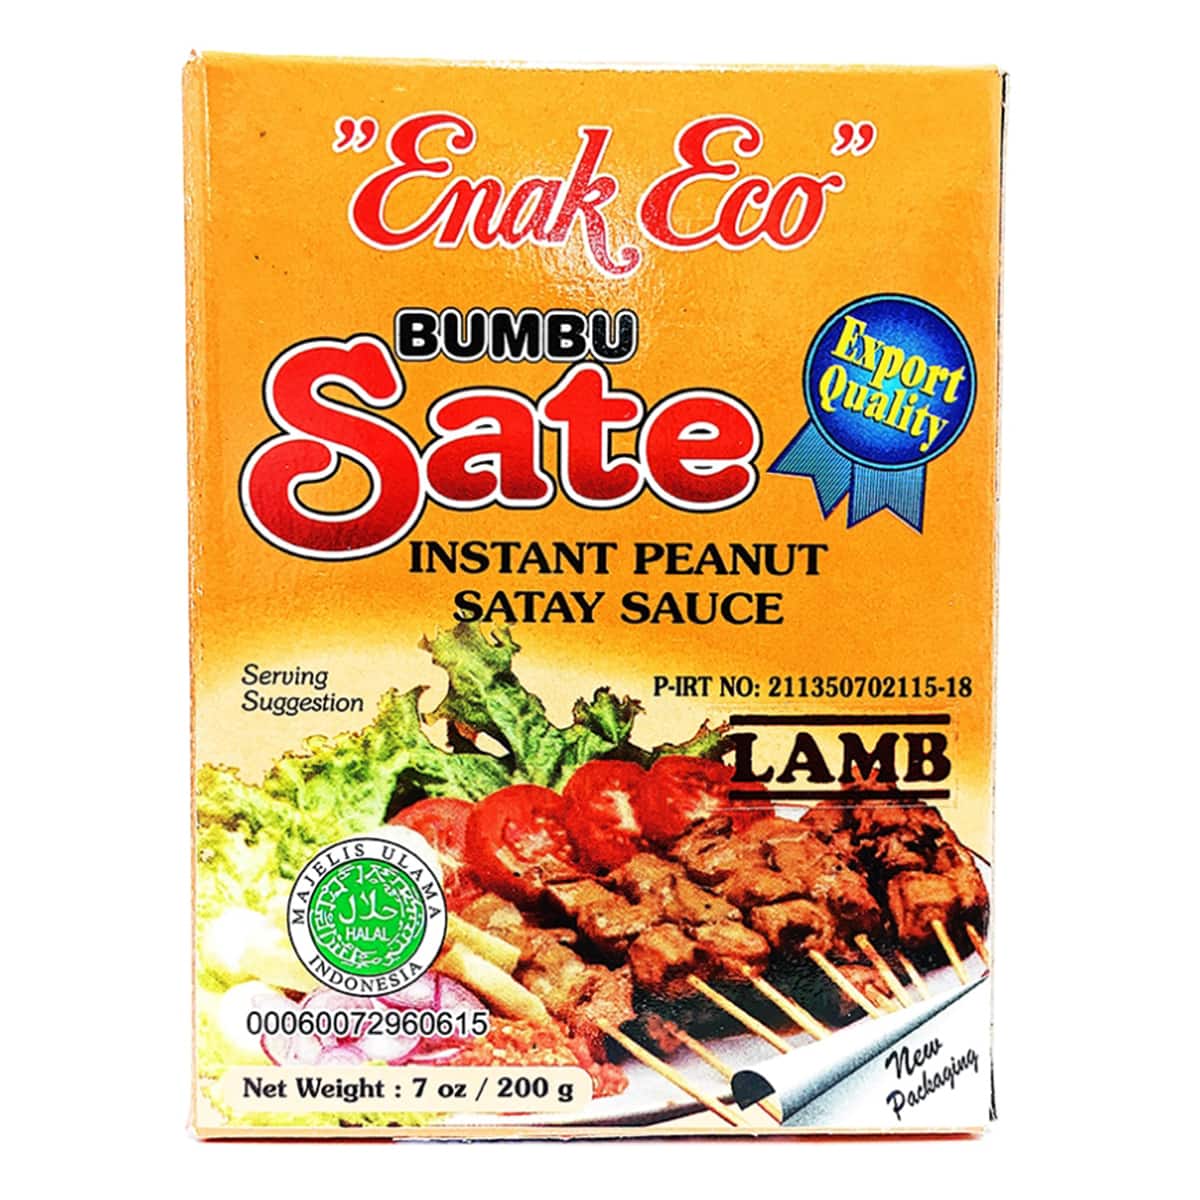 Buy Enak Eco Bumbu Sate (Instant Peanut Satay Sauce) Lamb - 200 gm